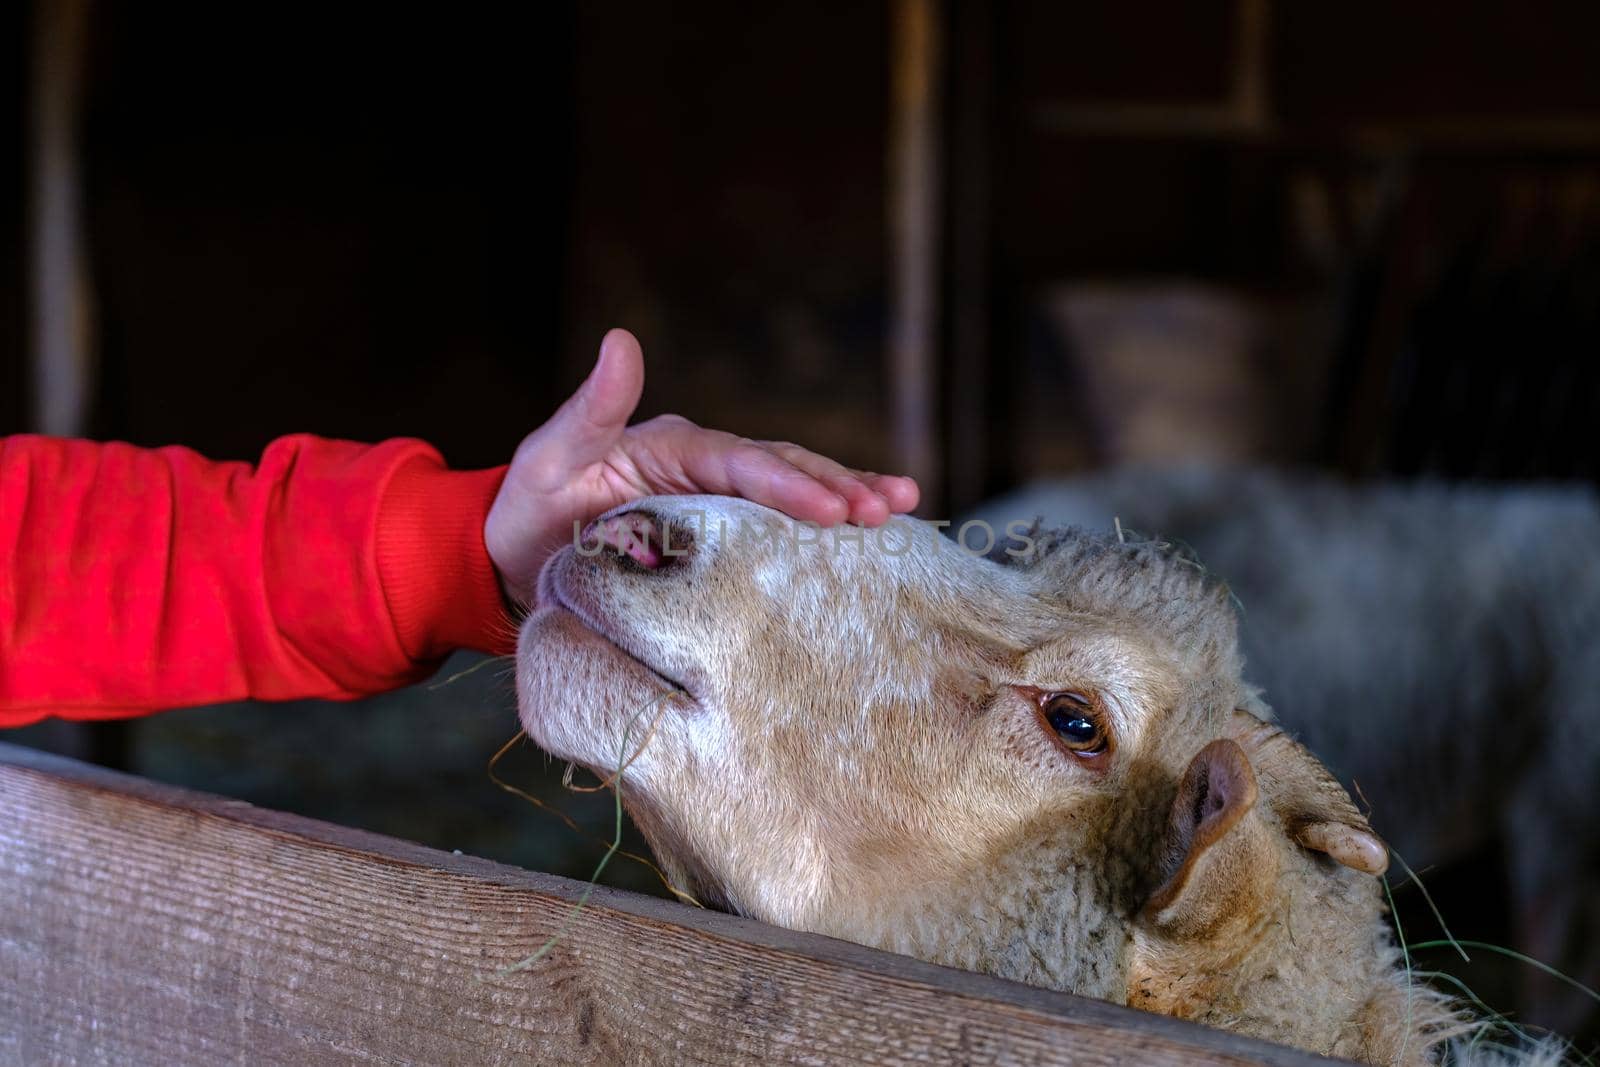 wonam caresses the sheep. Female hands caress the head of a sheep by igor010